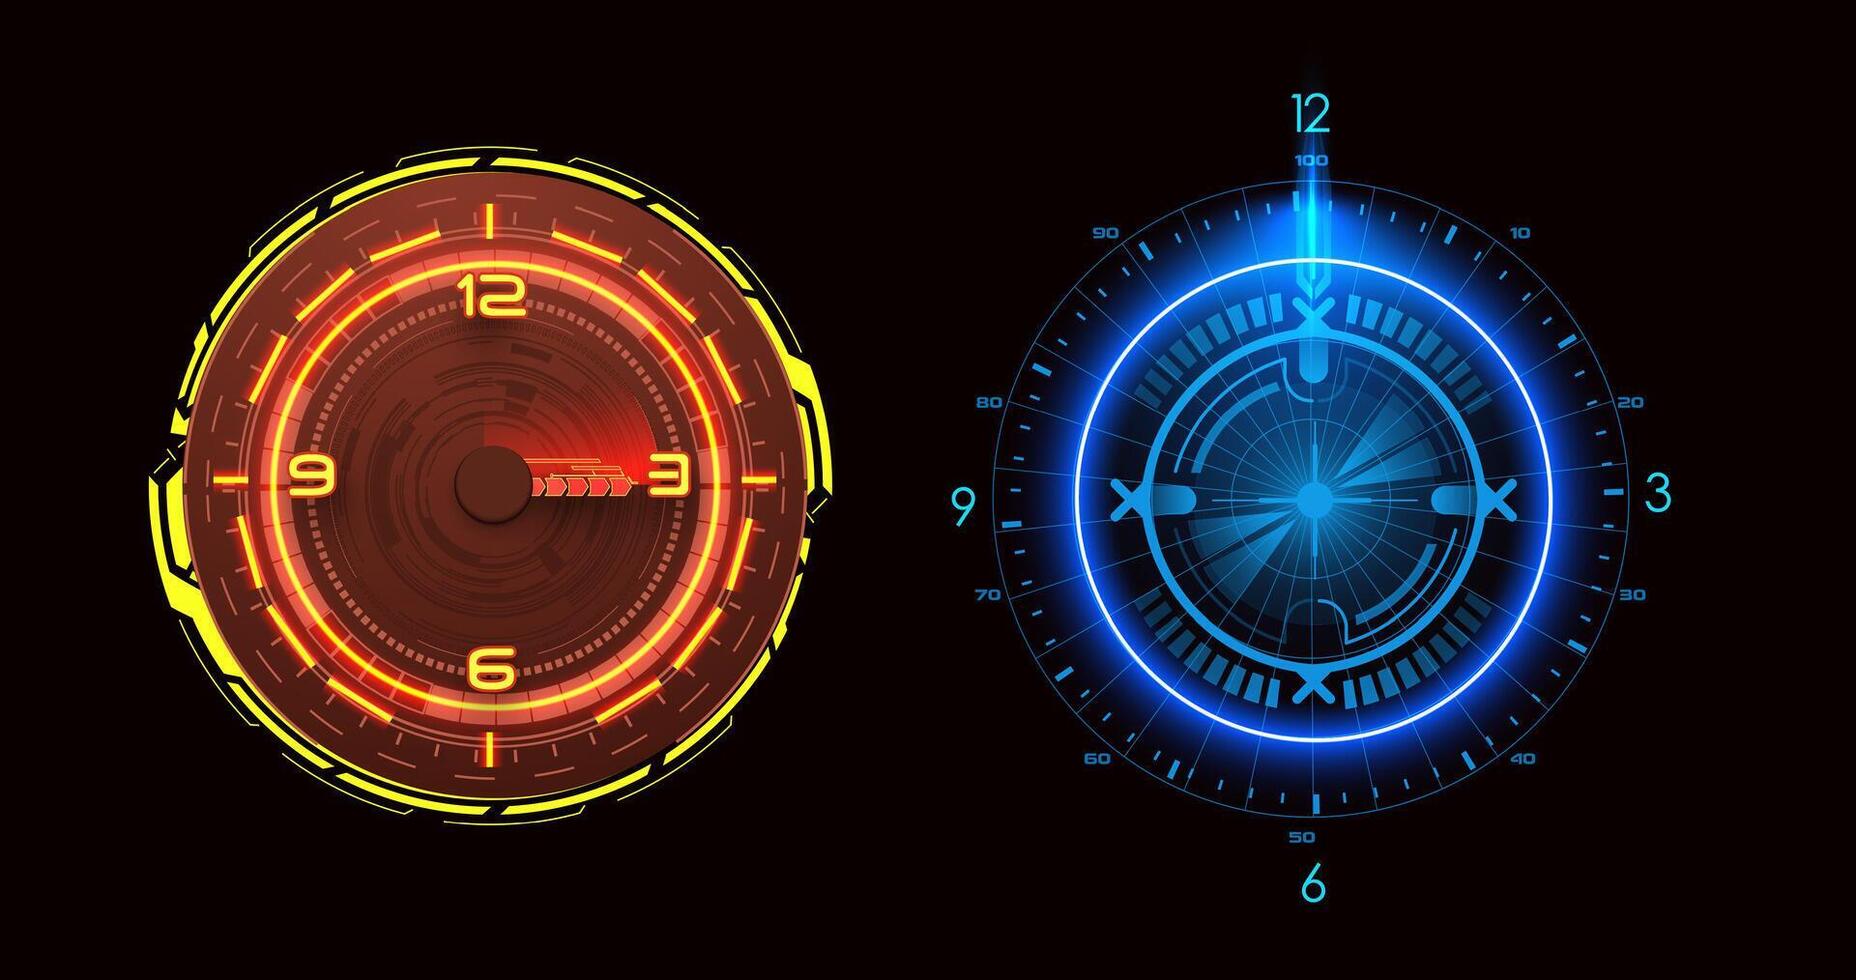 dois vibrante ficção científica relógios brilho dentro vermelho e azul matizes, exibindo futurista cronometragem. usava para indicar Tempo e a medida tempo. vetor ilustração